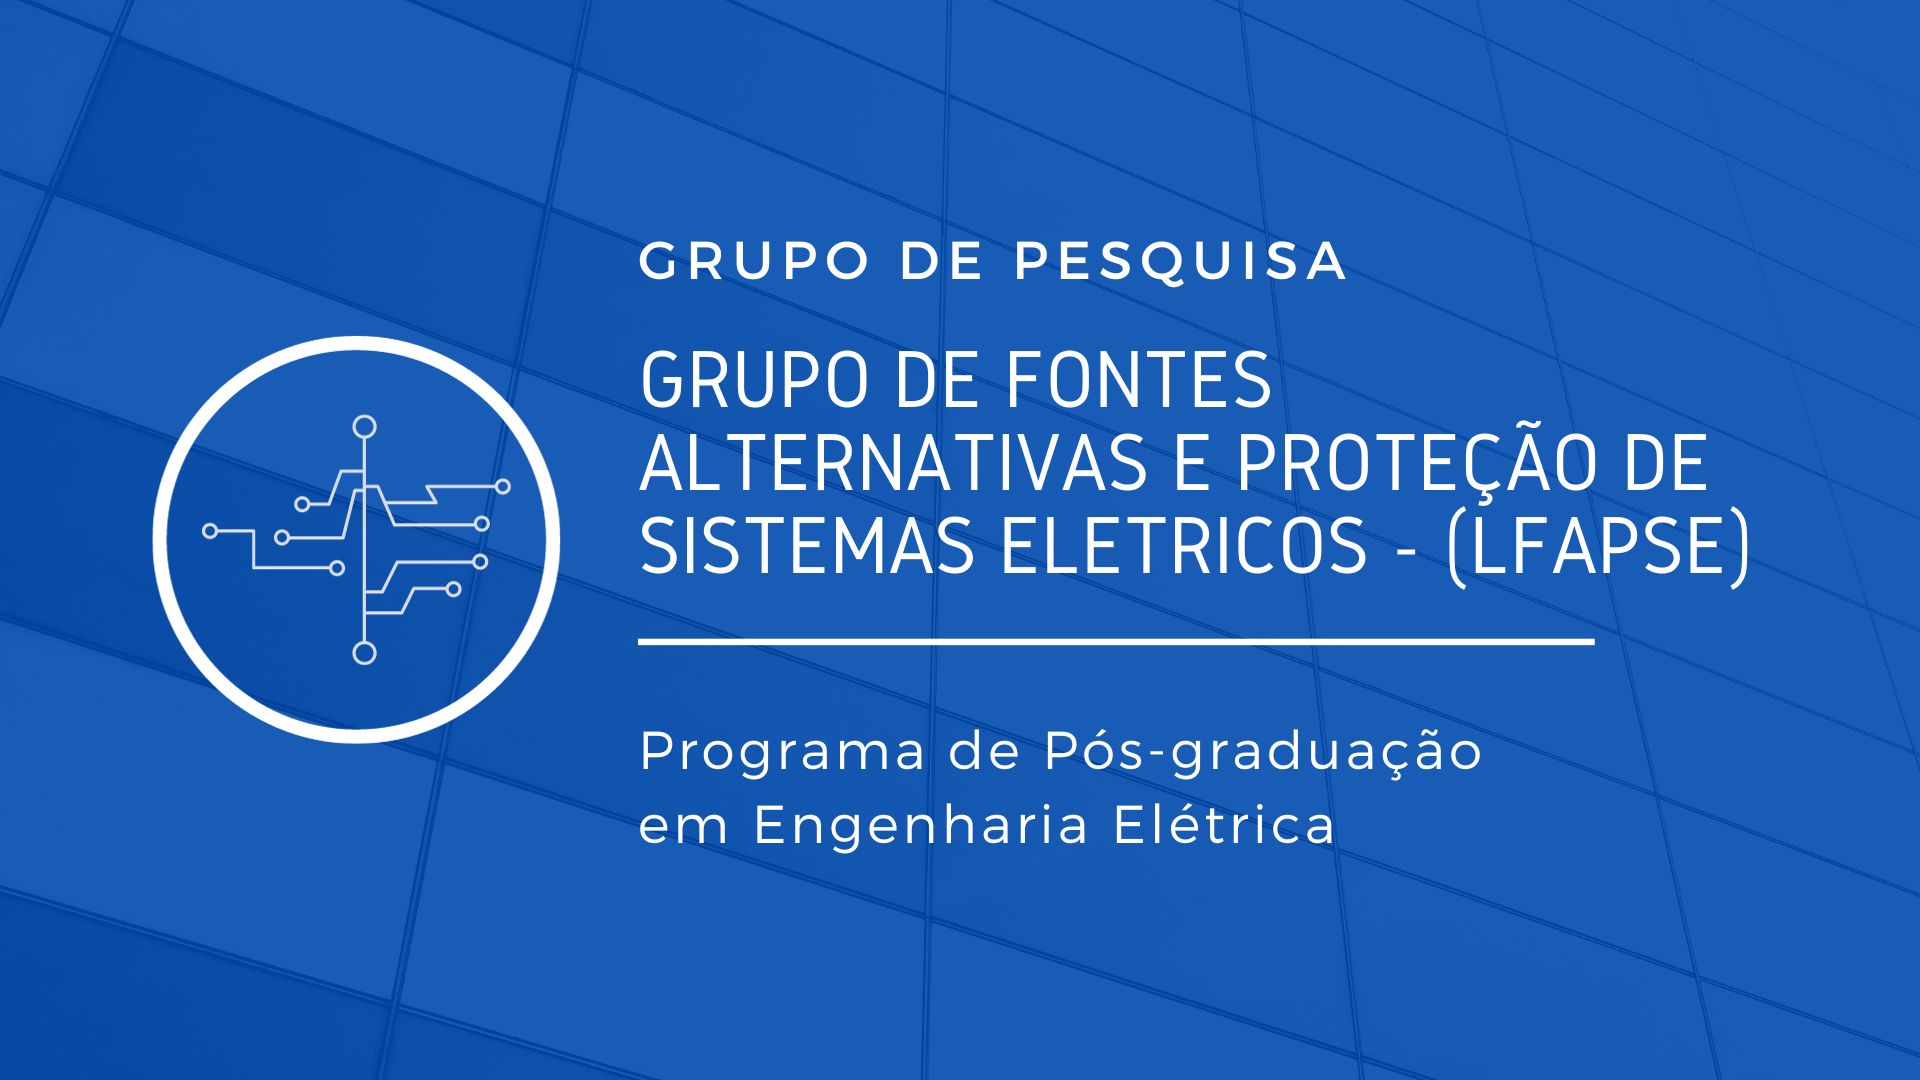 Grupo de Energias Alternativas e Proteção de Sistemas Elétricos - (LEAPSE)